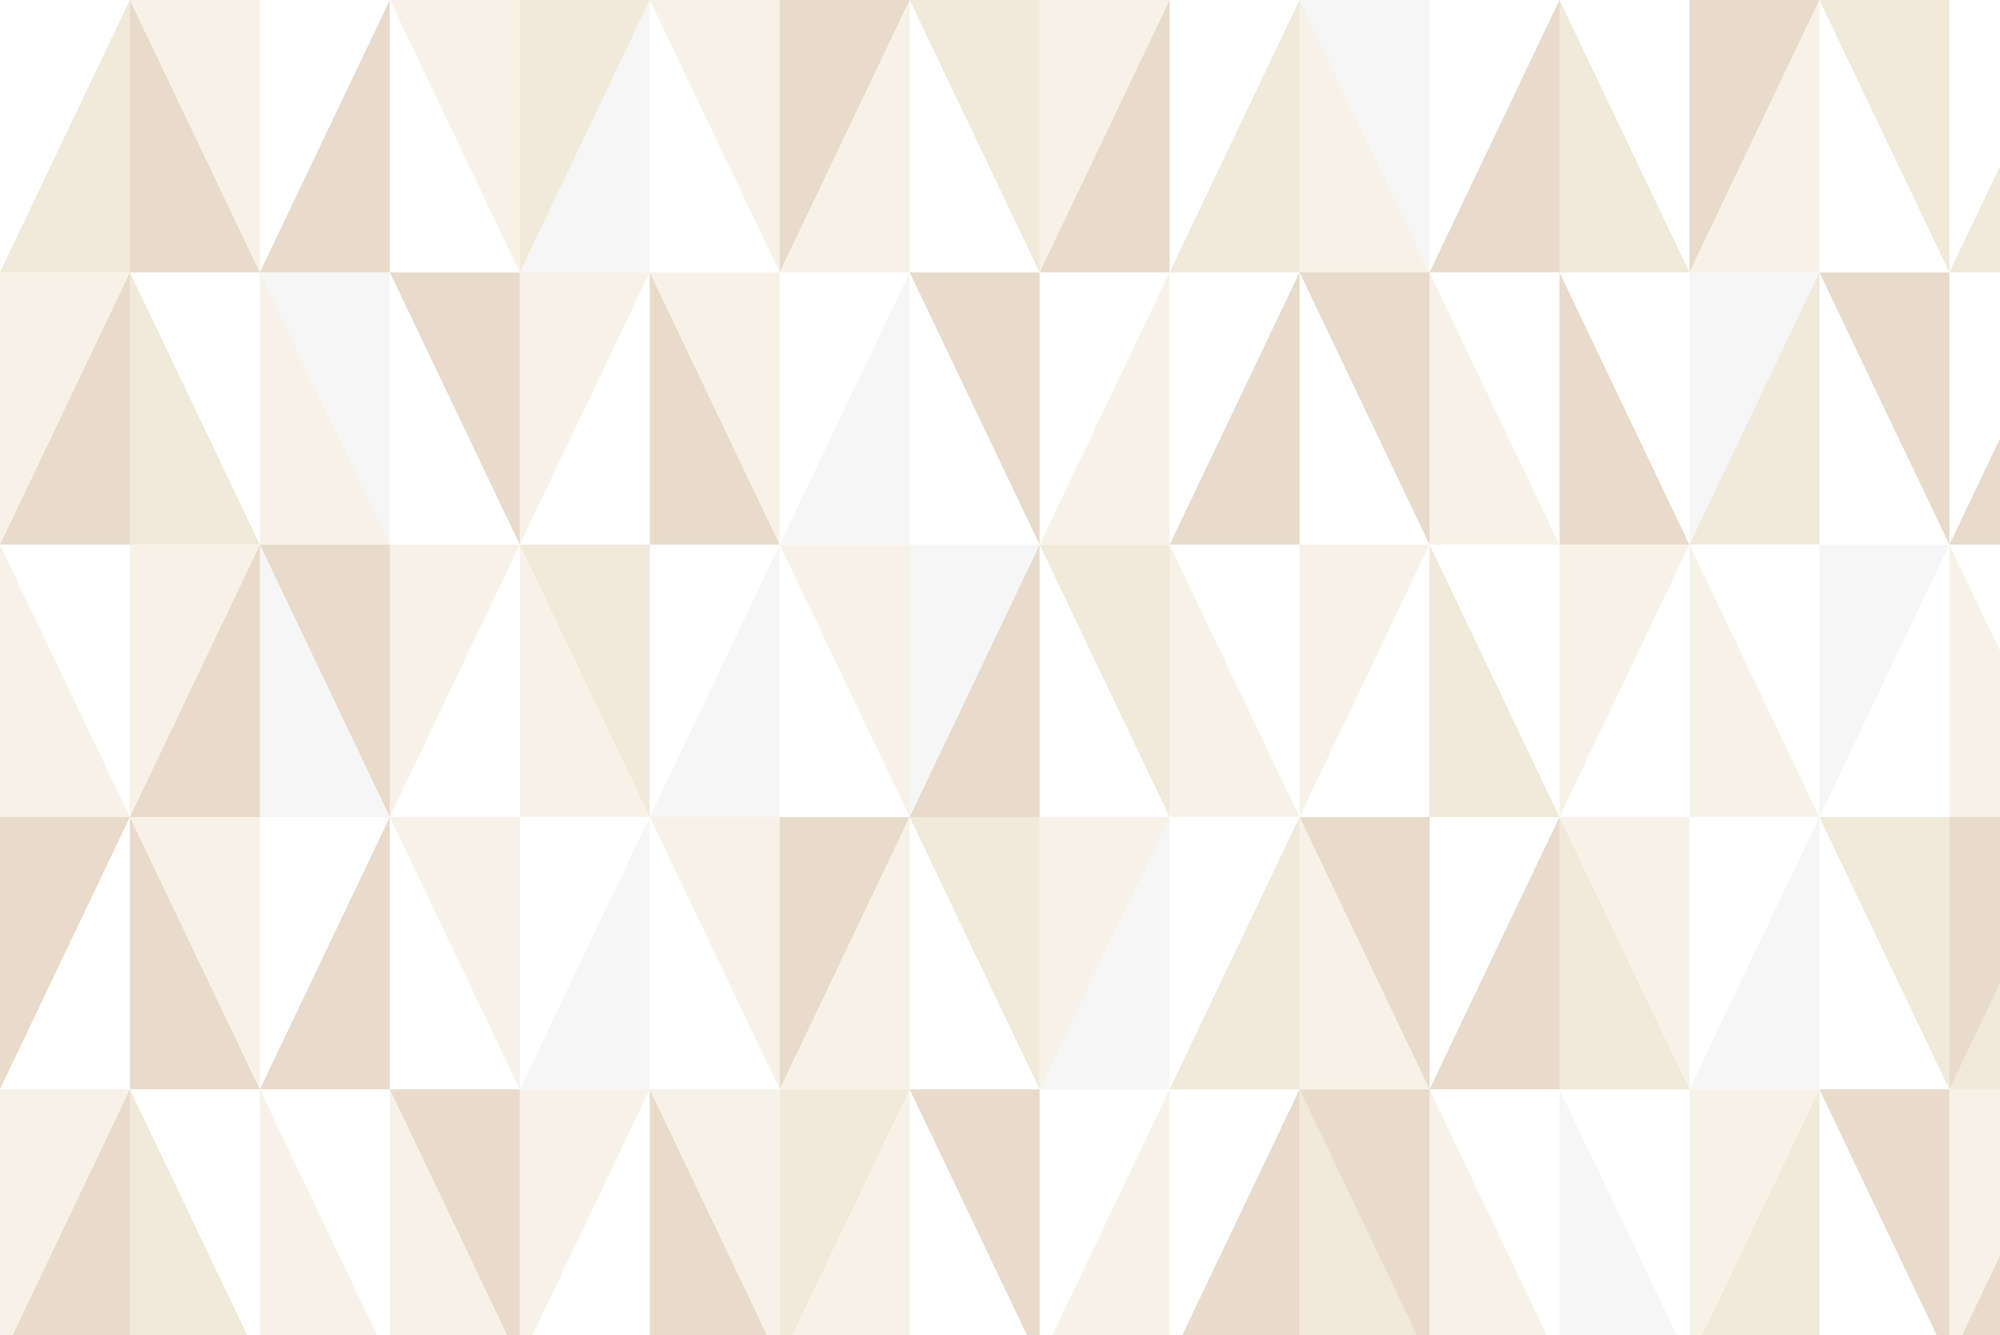             Papel pintado de diseño con pequeños triángulos grises sobre vellón liso de primera calidad
        